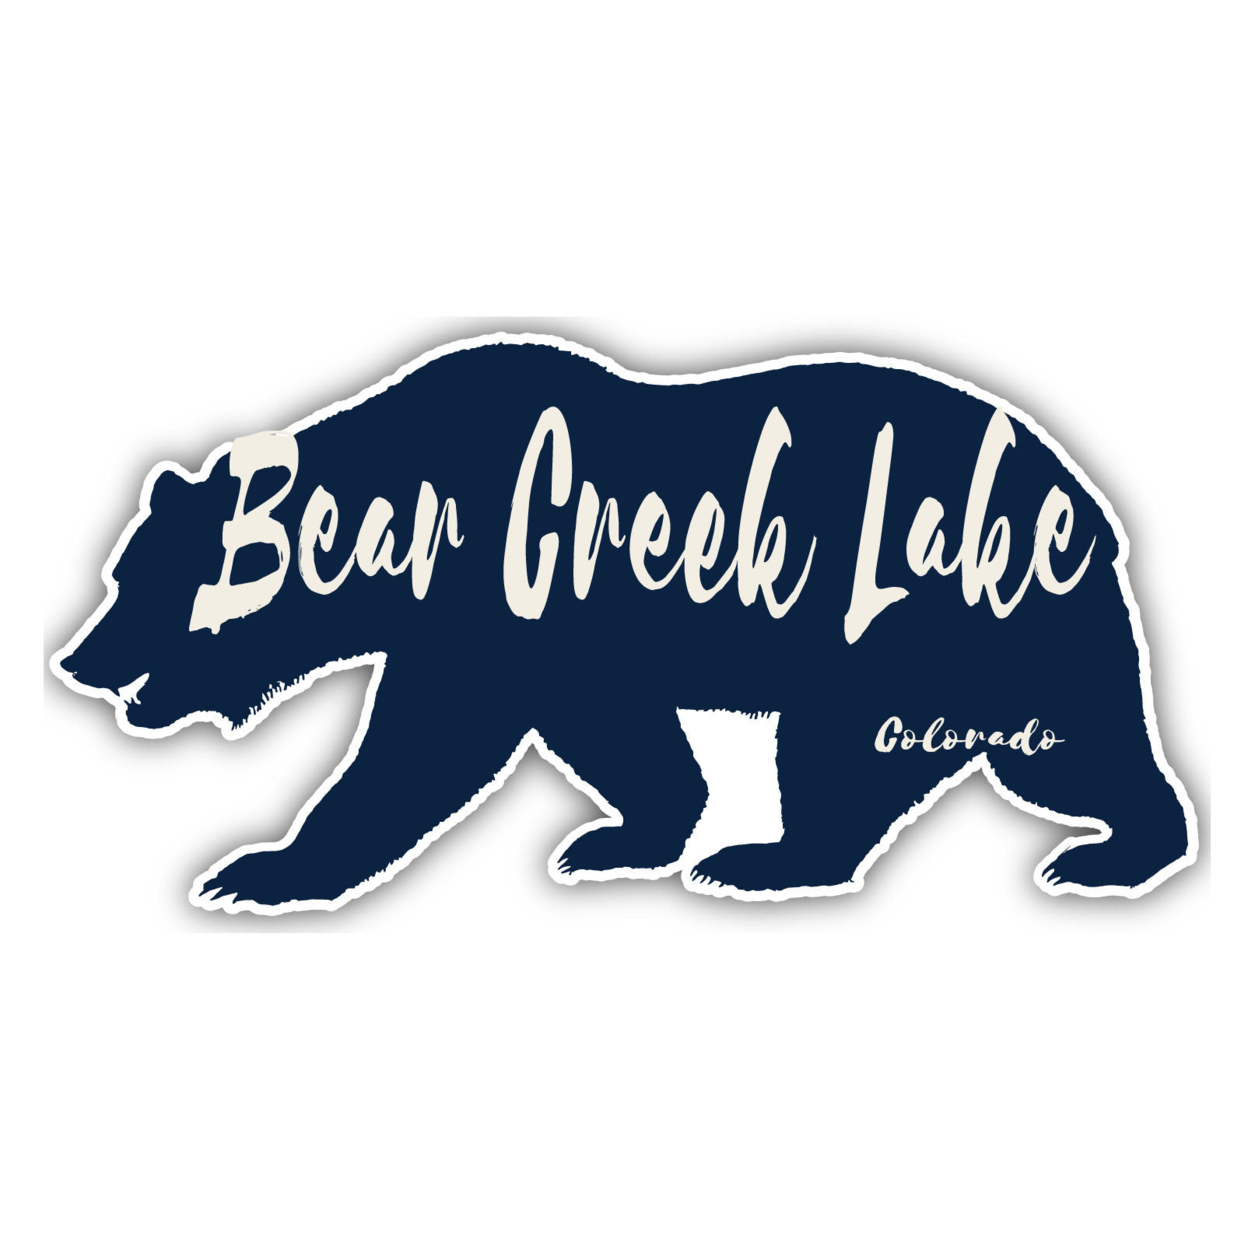 Bear Creek Lake Colorado Souvenir Decorative Stickers (Choose Theme And Size) - Single Unit, 8-Inch, Bear